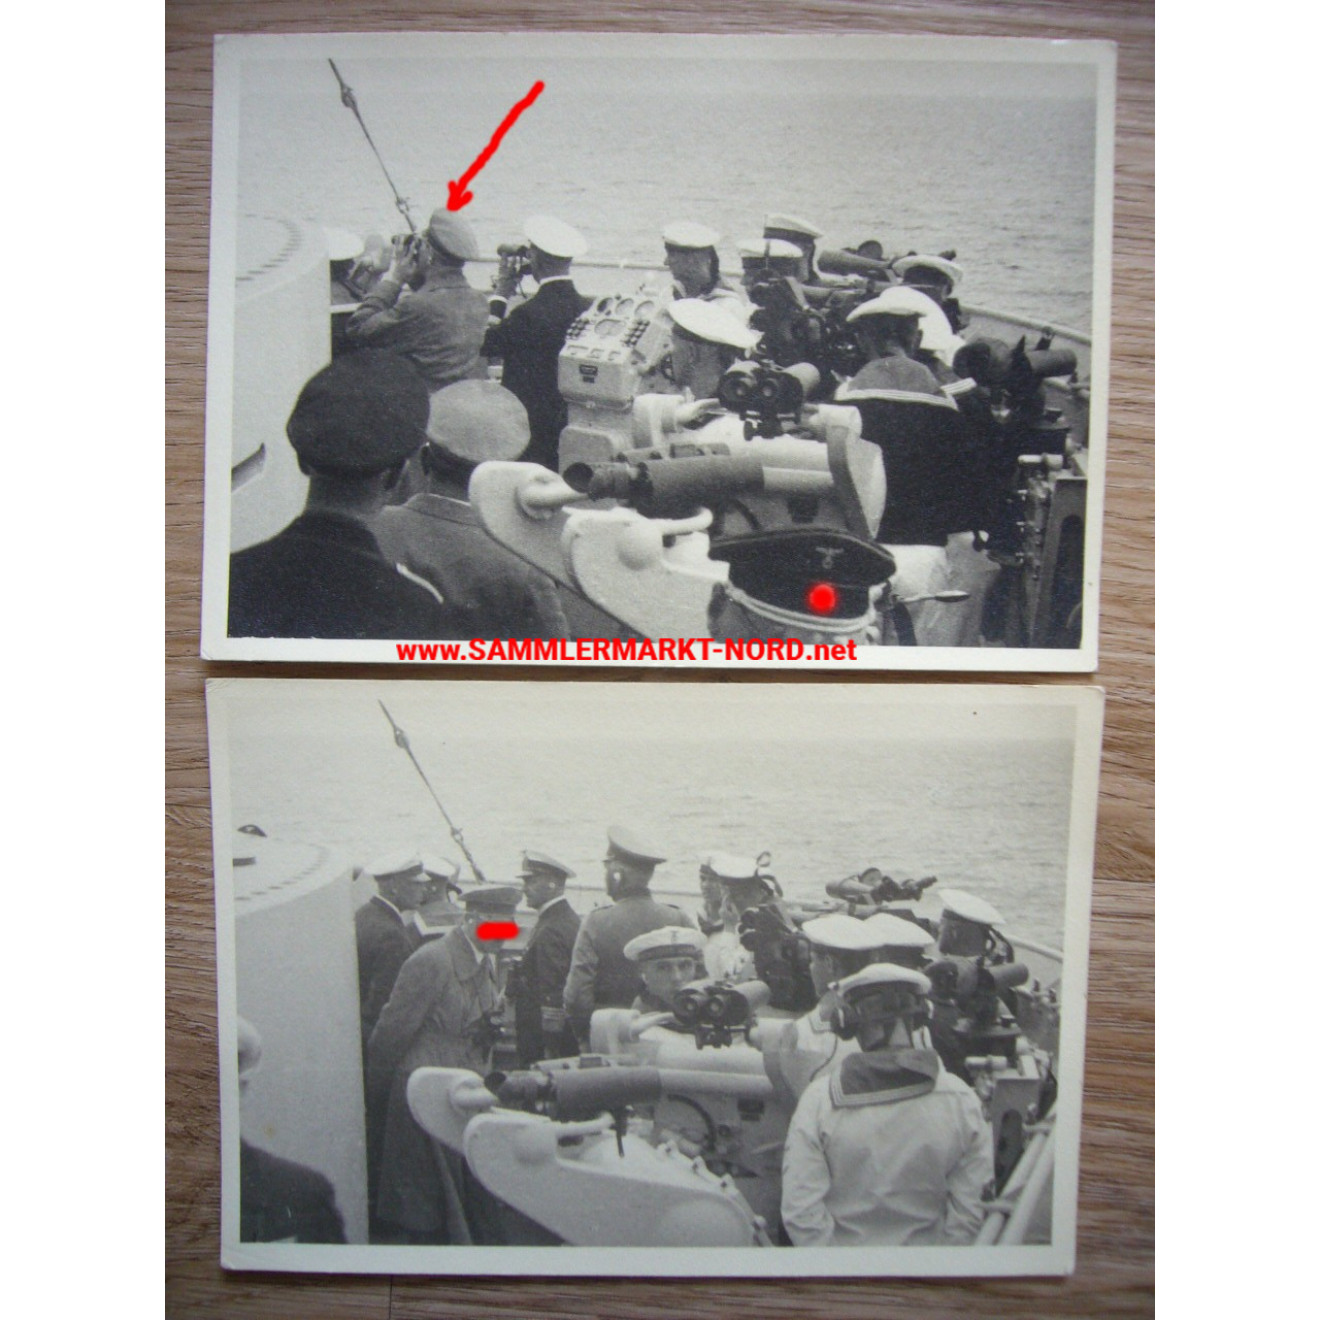 2 x photo battleship Deutschland - Adolf Hitler on board